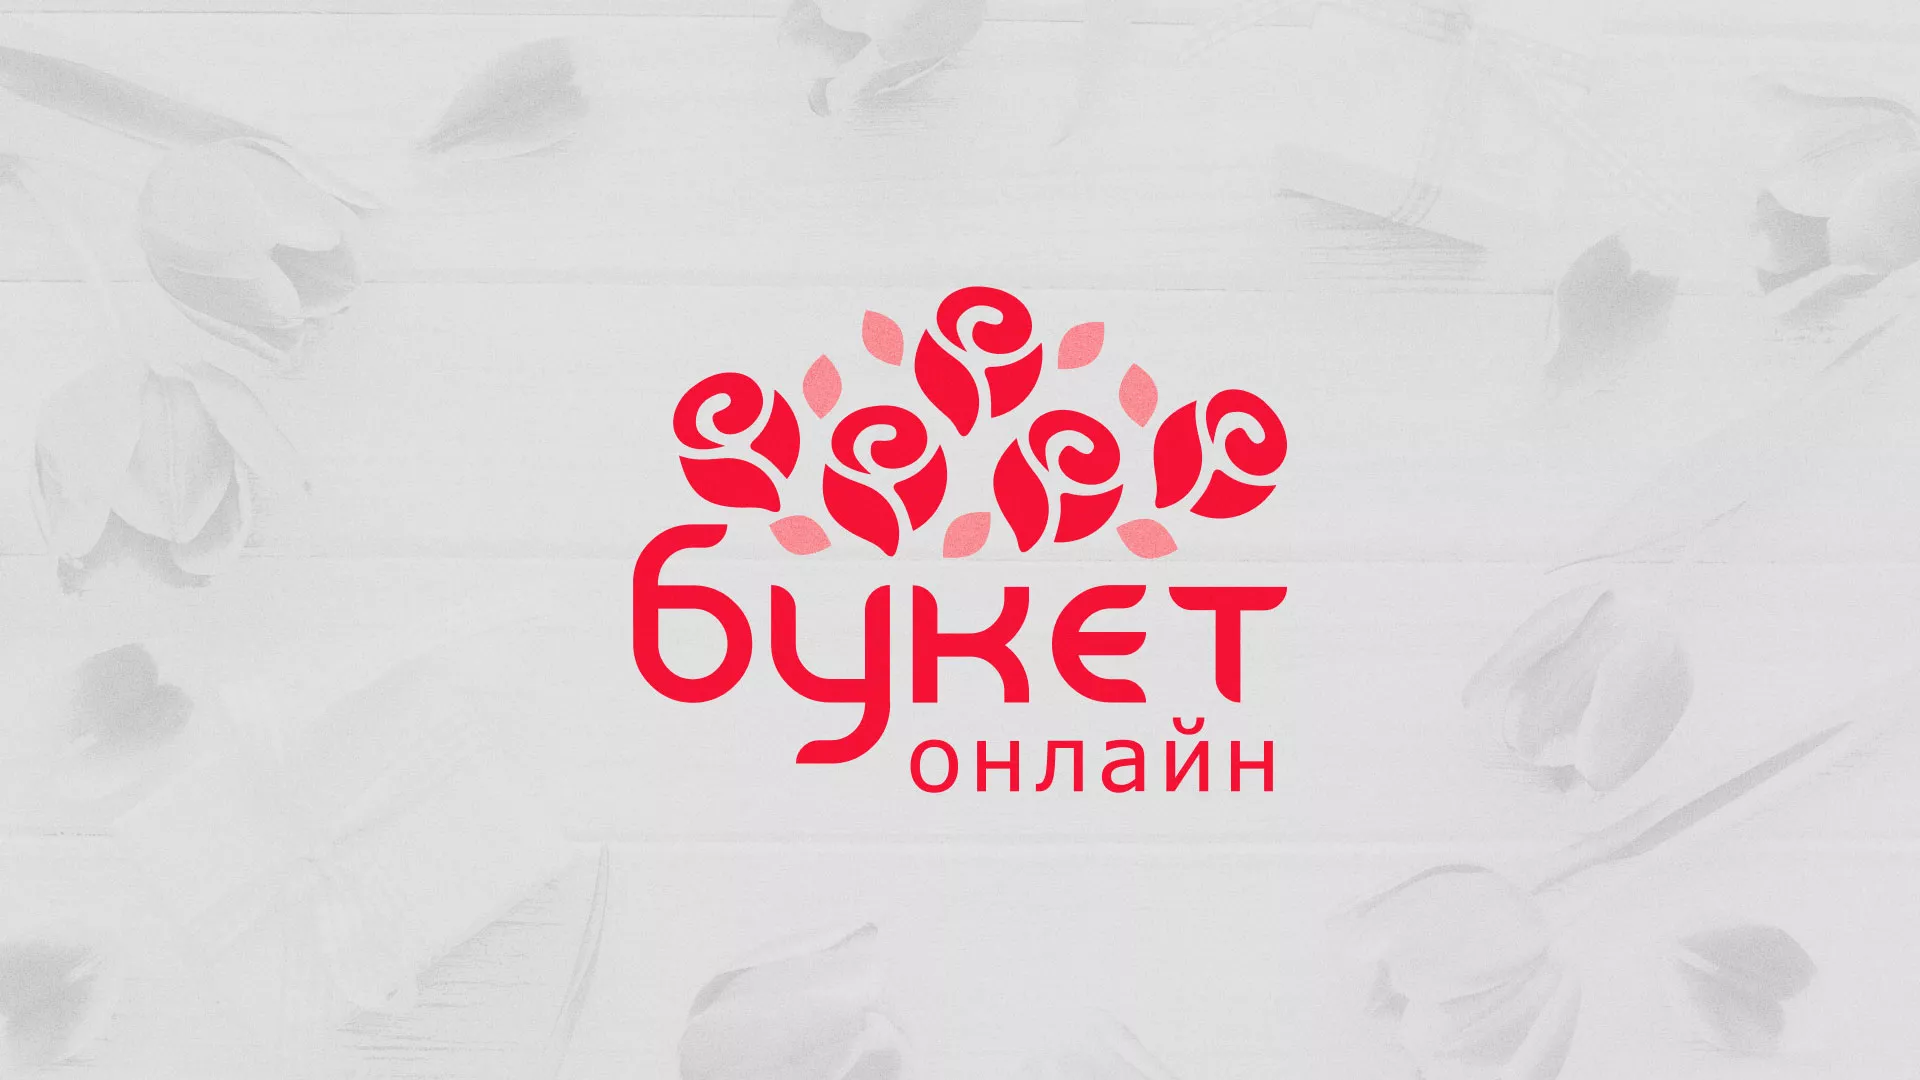 Создание интернет-магазина «Букет-онлайн» по цветам в Новосибирске